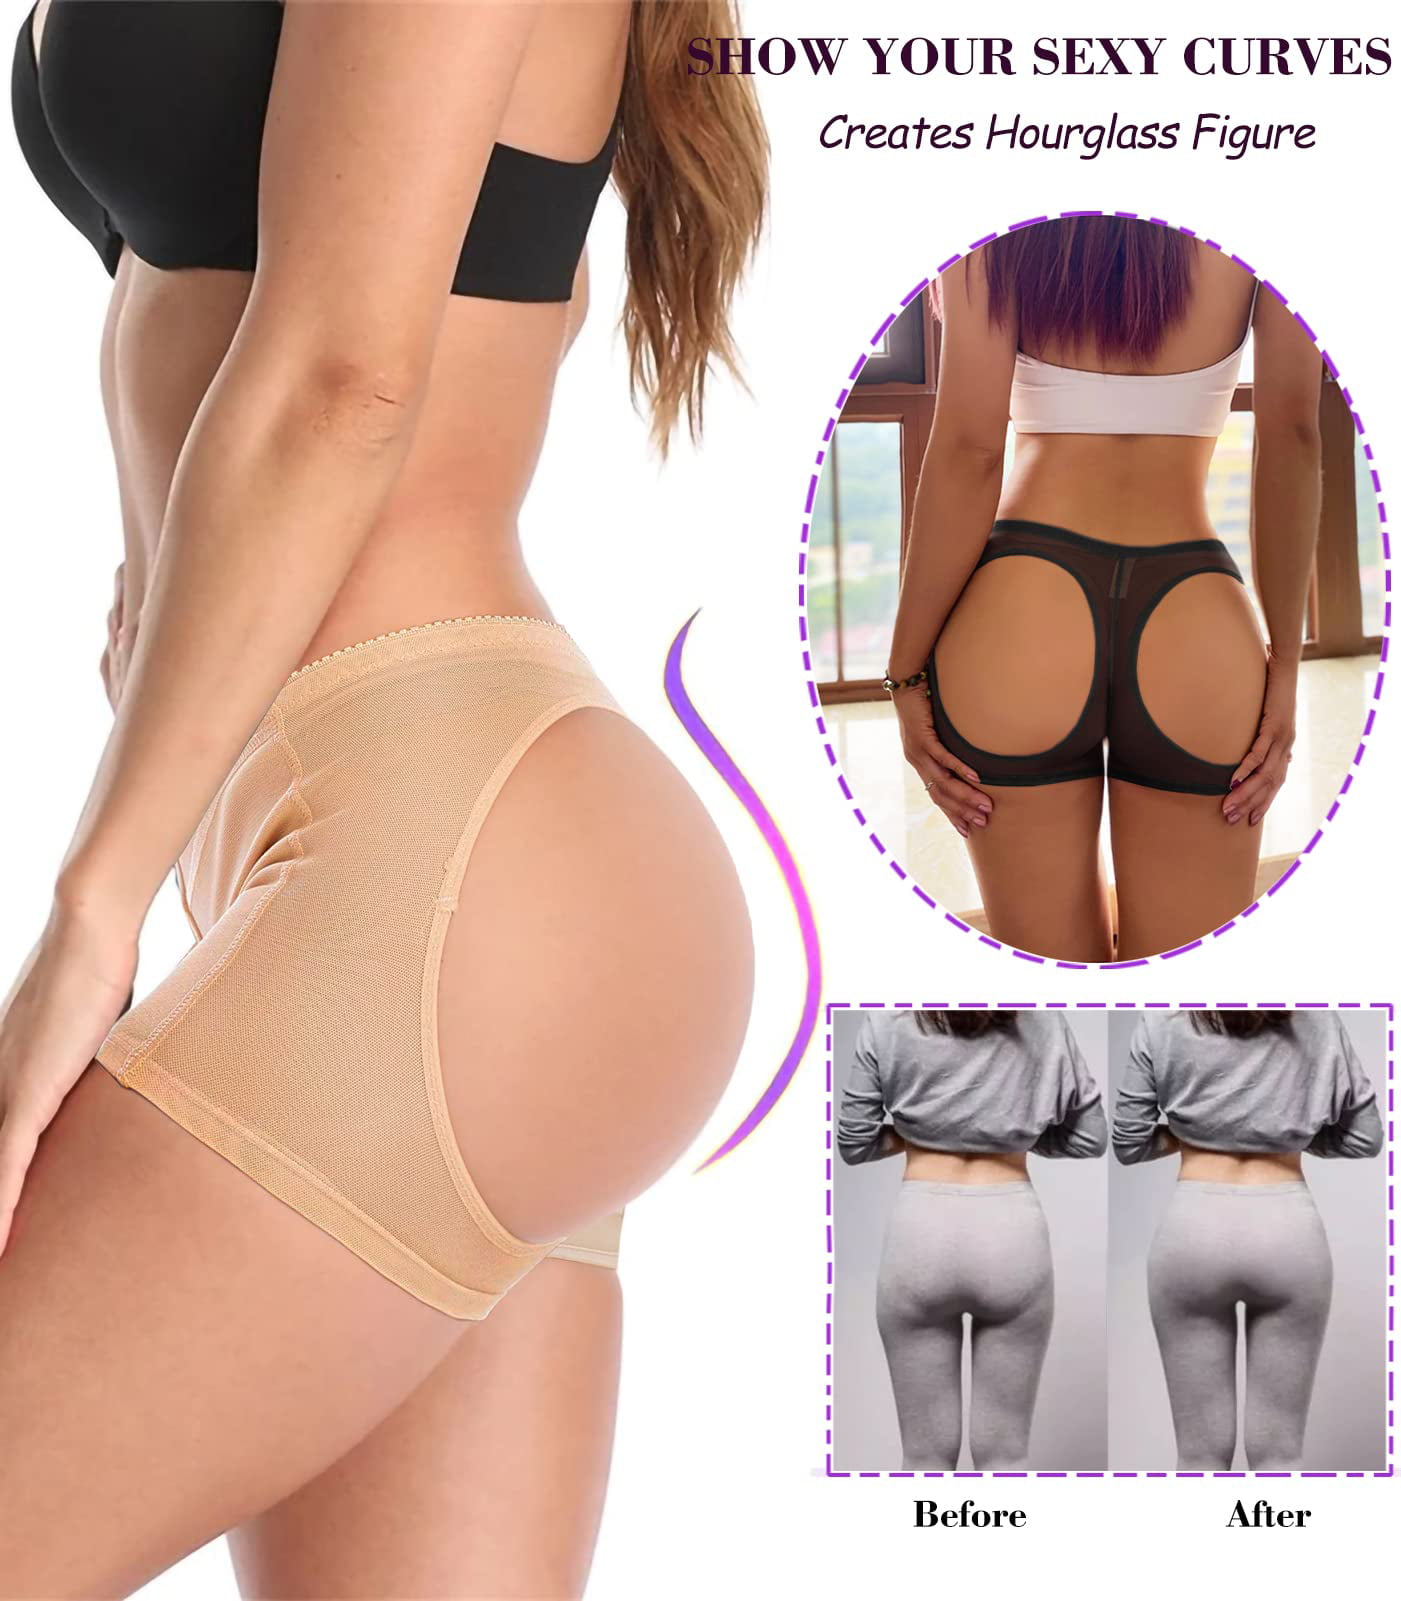 ESSSUT Underwear Womens Women's Shapewear Exposed Buttock Women's